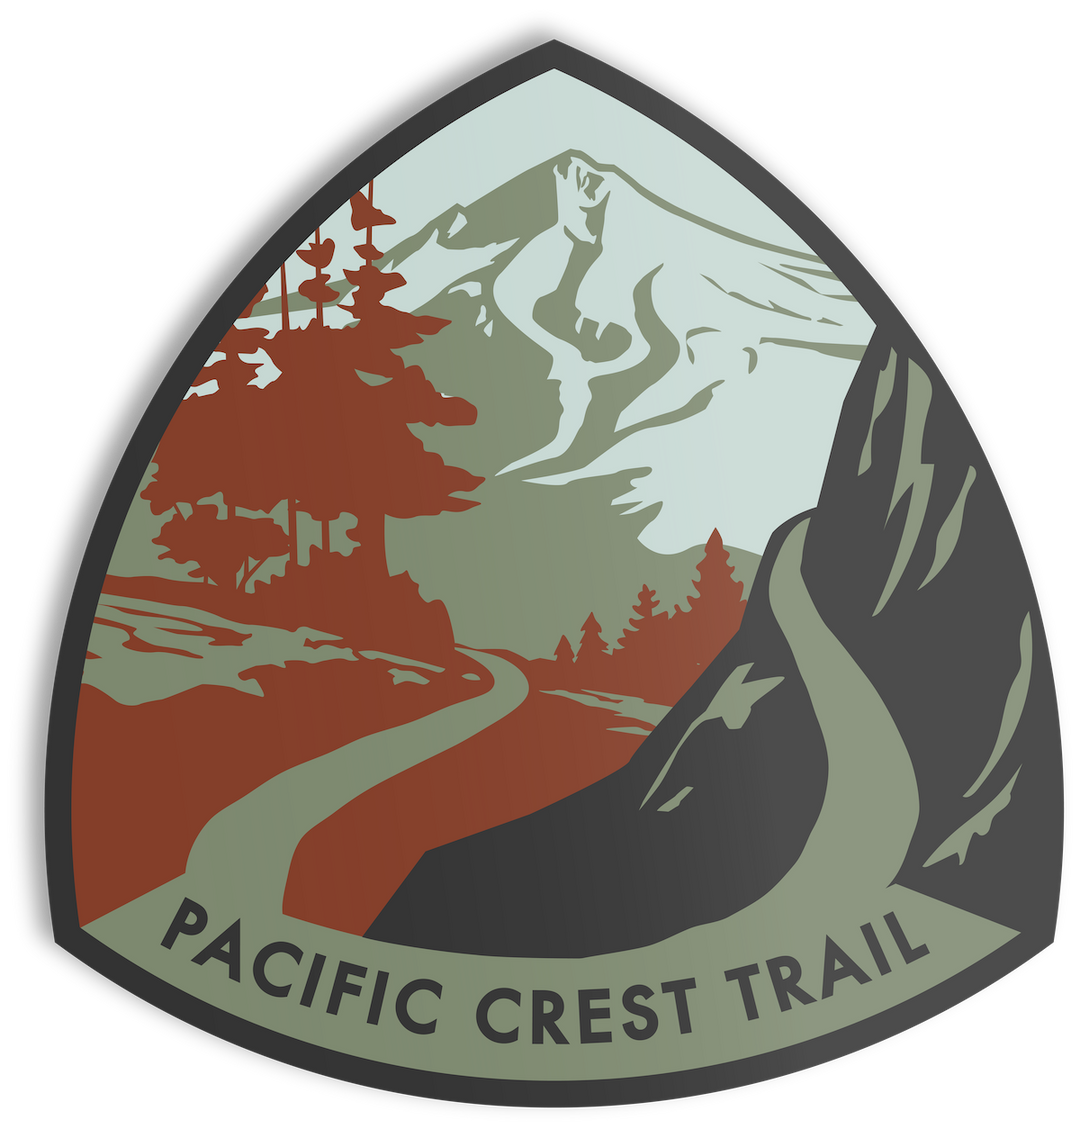 Pacific Crest Trail Sticker Sticker One Size 